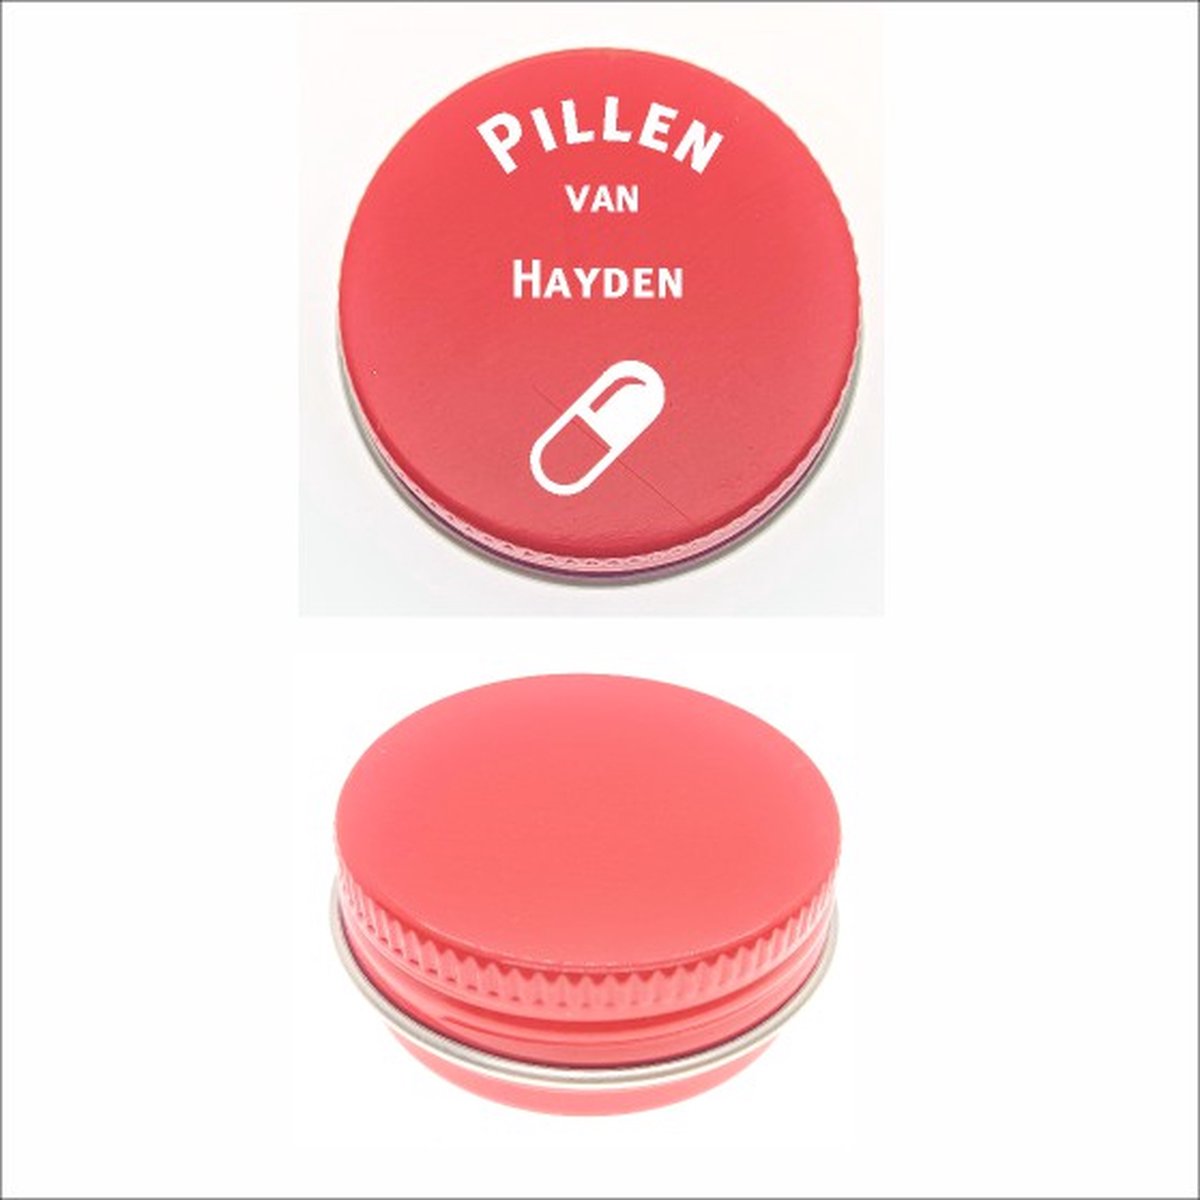 Pillen Blikje Met Naam Gravering - Hayden